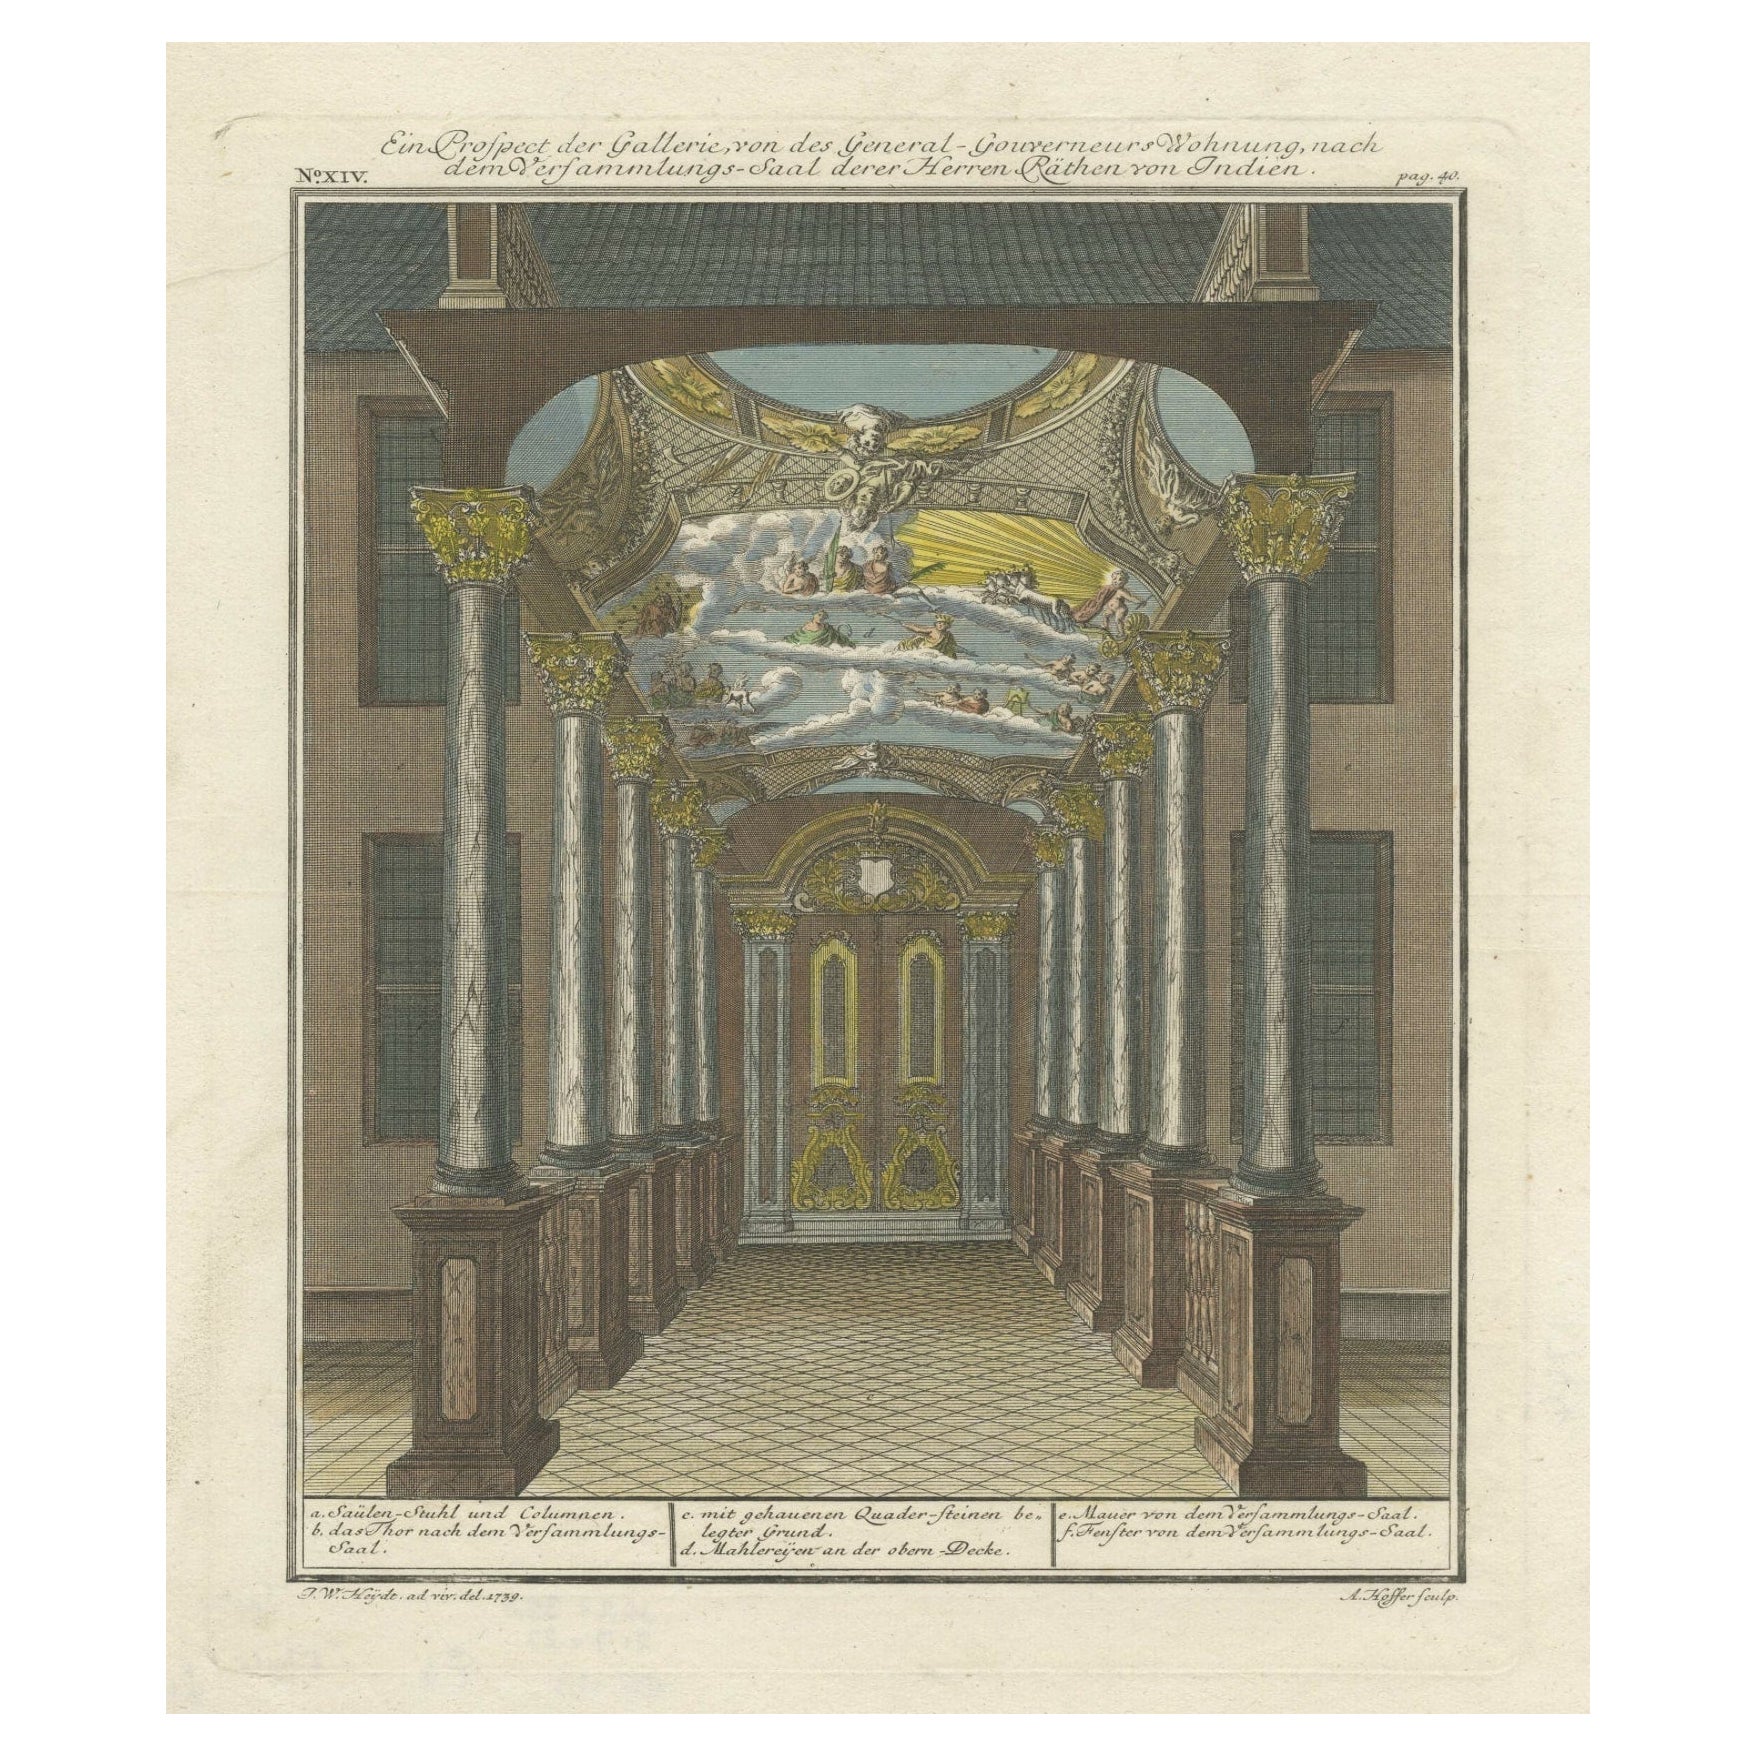 Impression de l'intérieur de la maison du gouverneur général sur Java (Indonésie), 1739